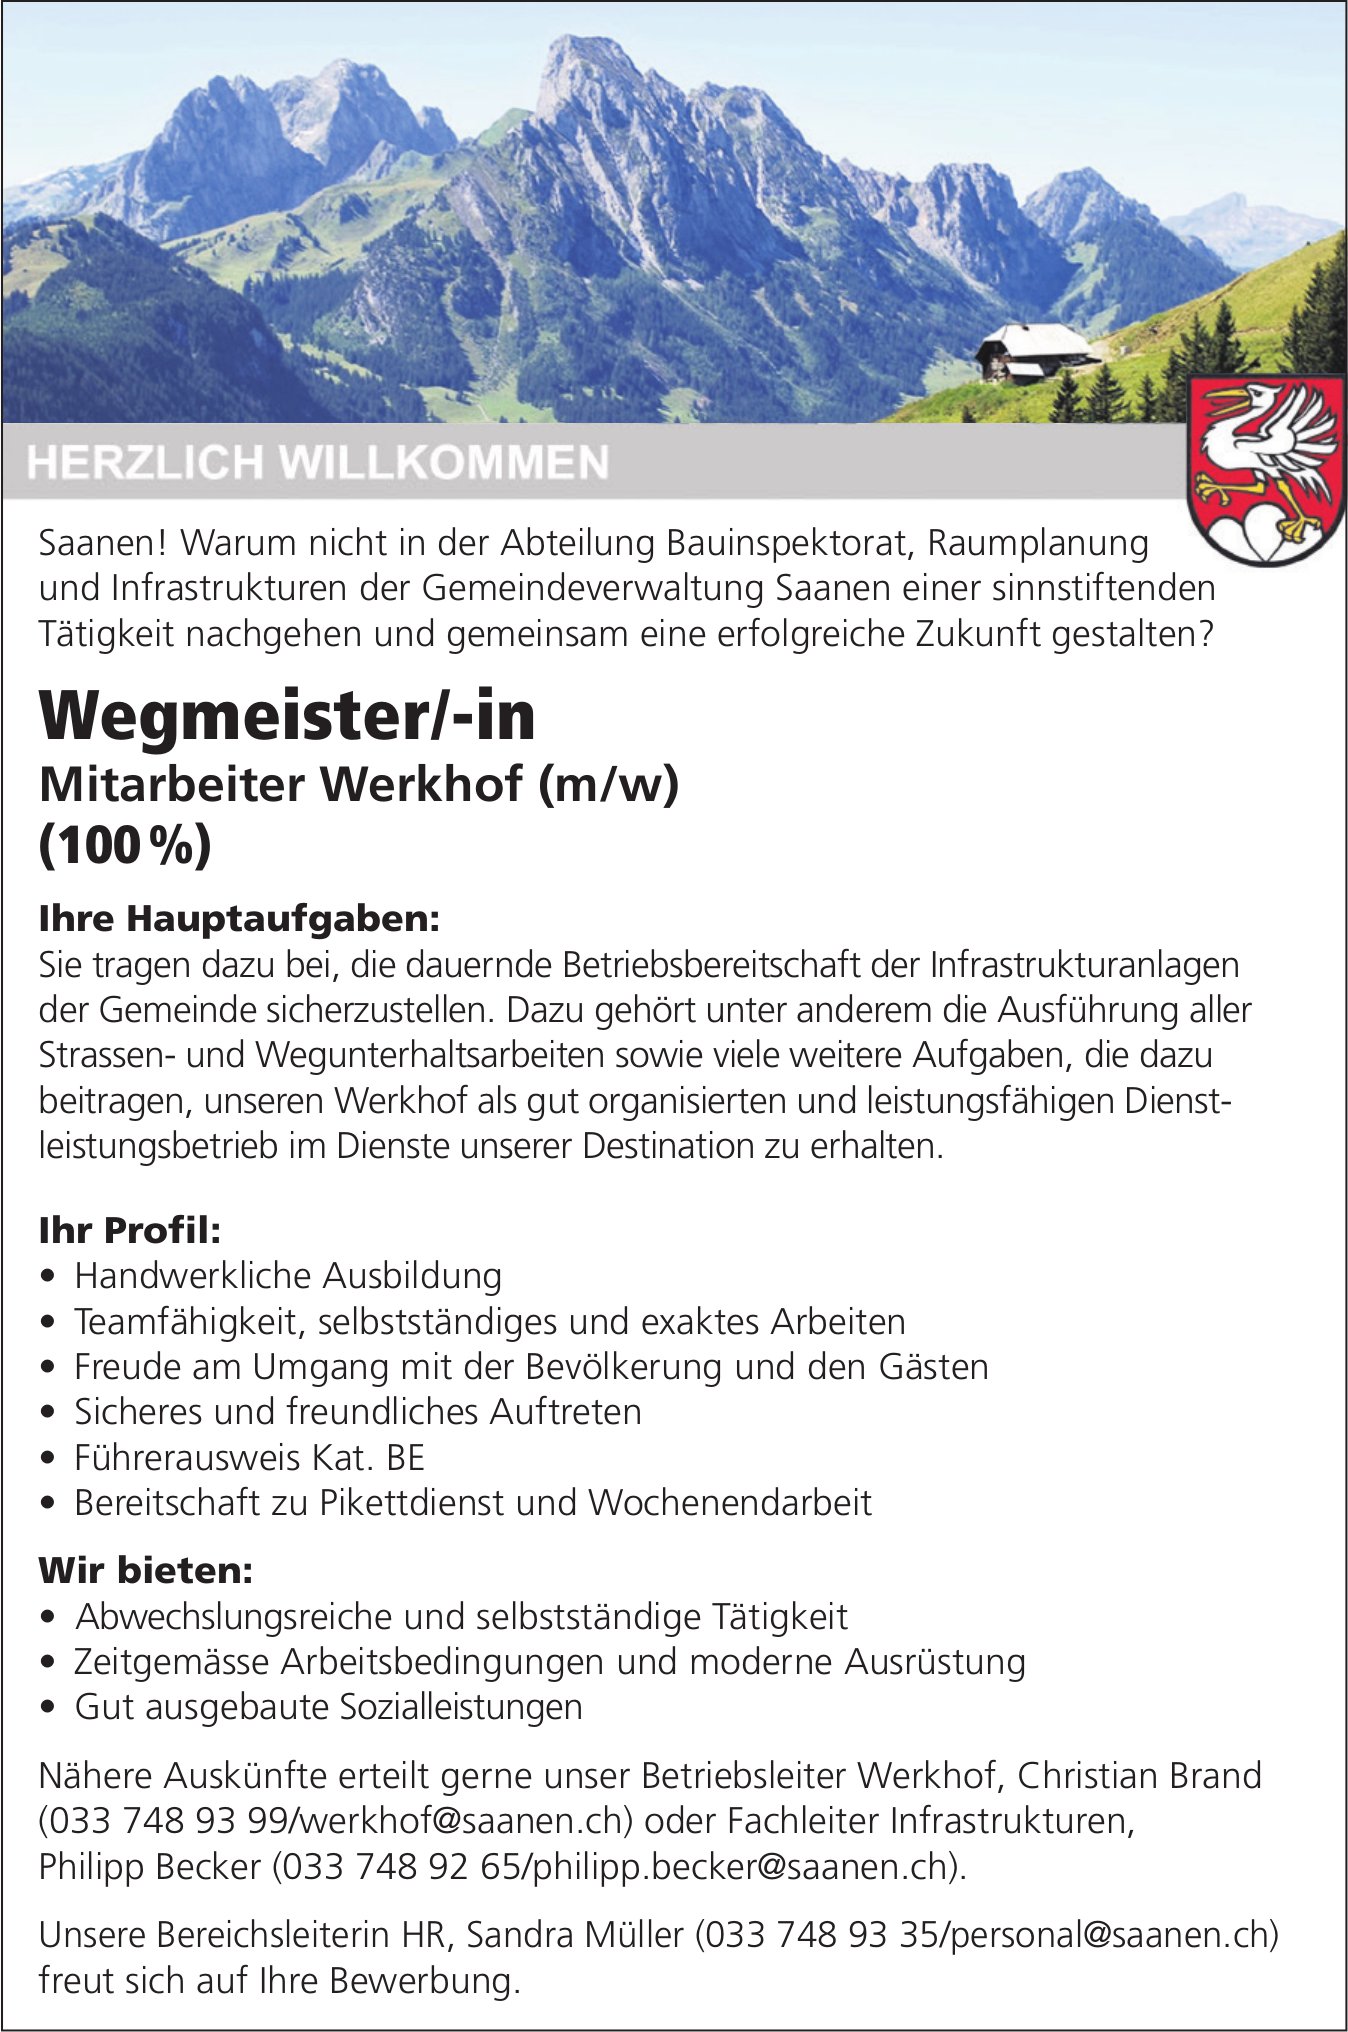 Wegmeister/-in Mitarbeiter Werkhof (m/w) (100%), Saanen, gesucht